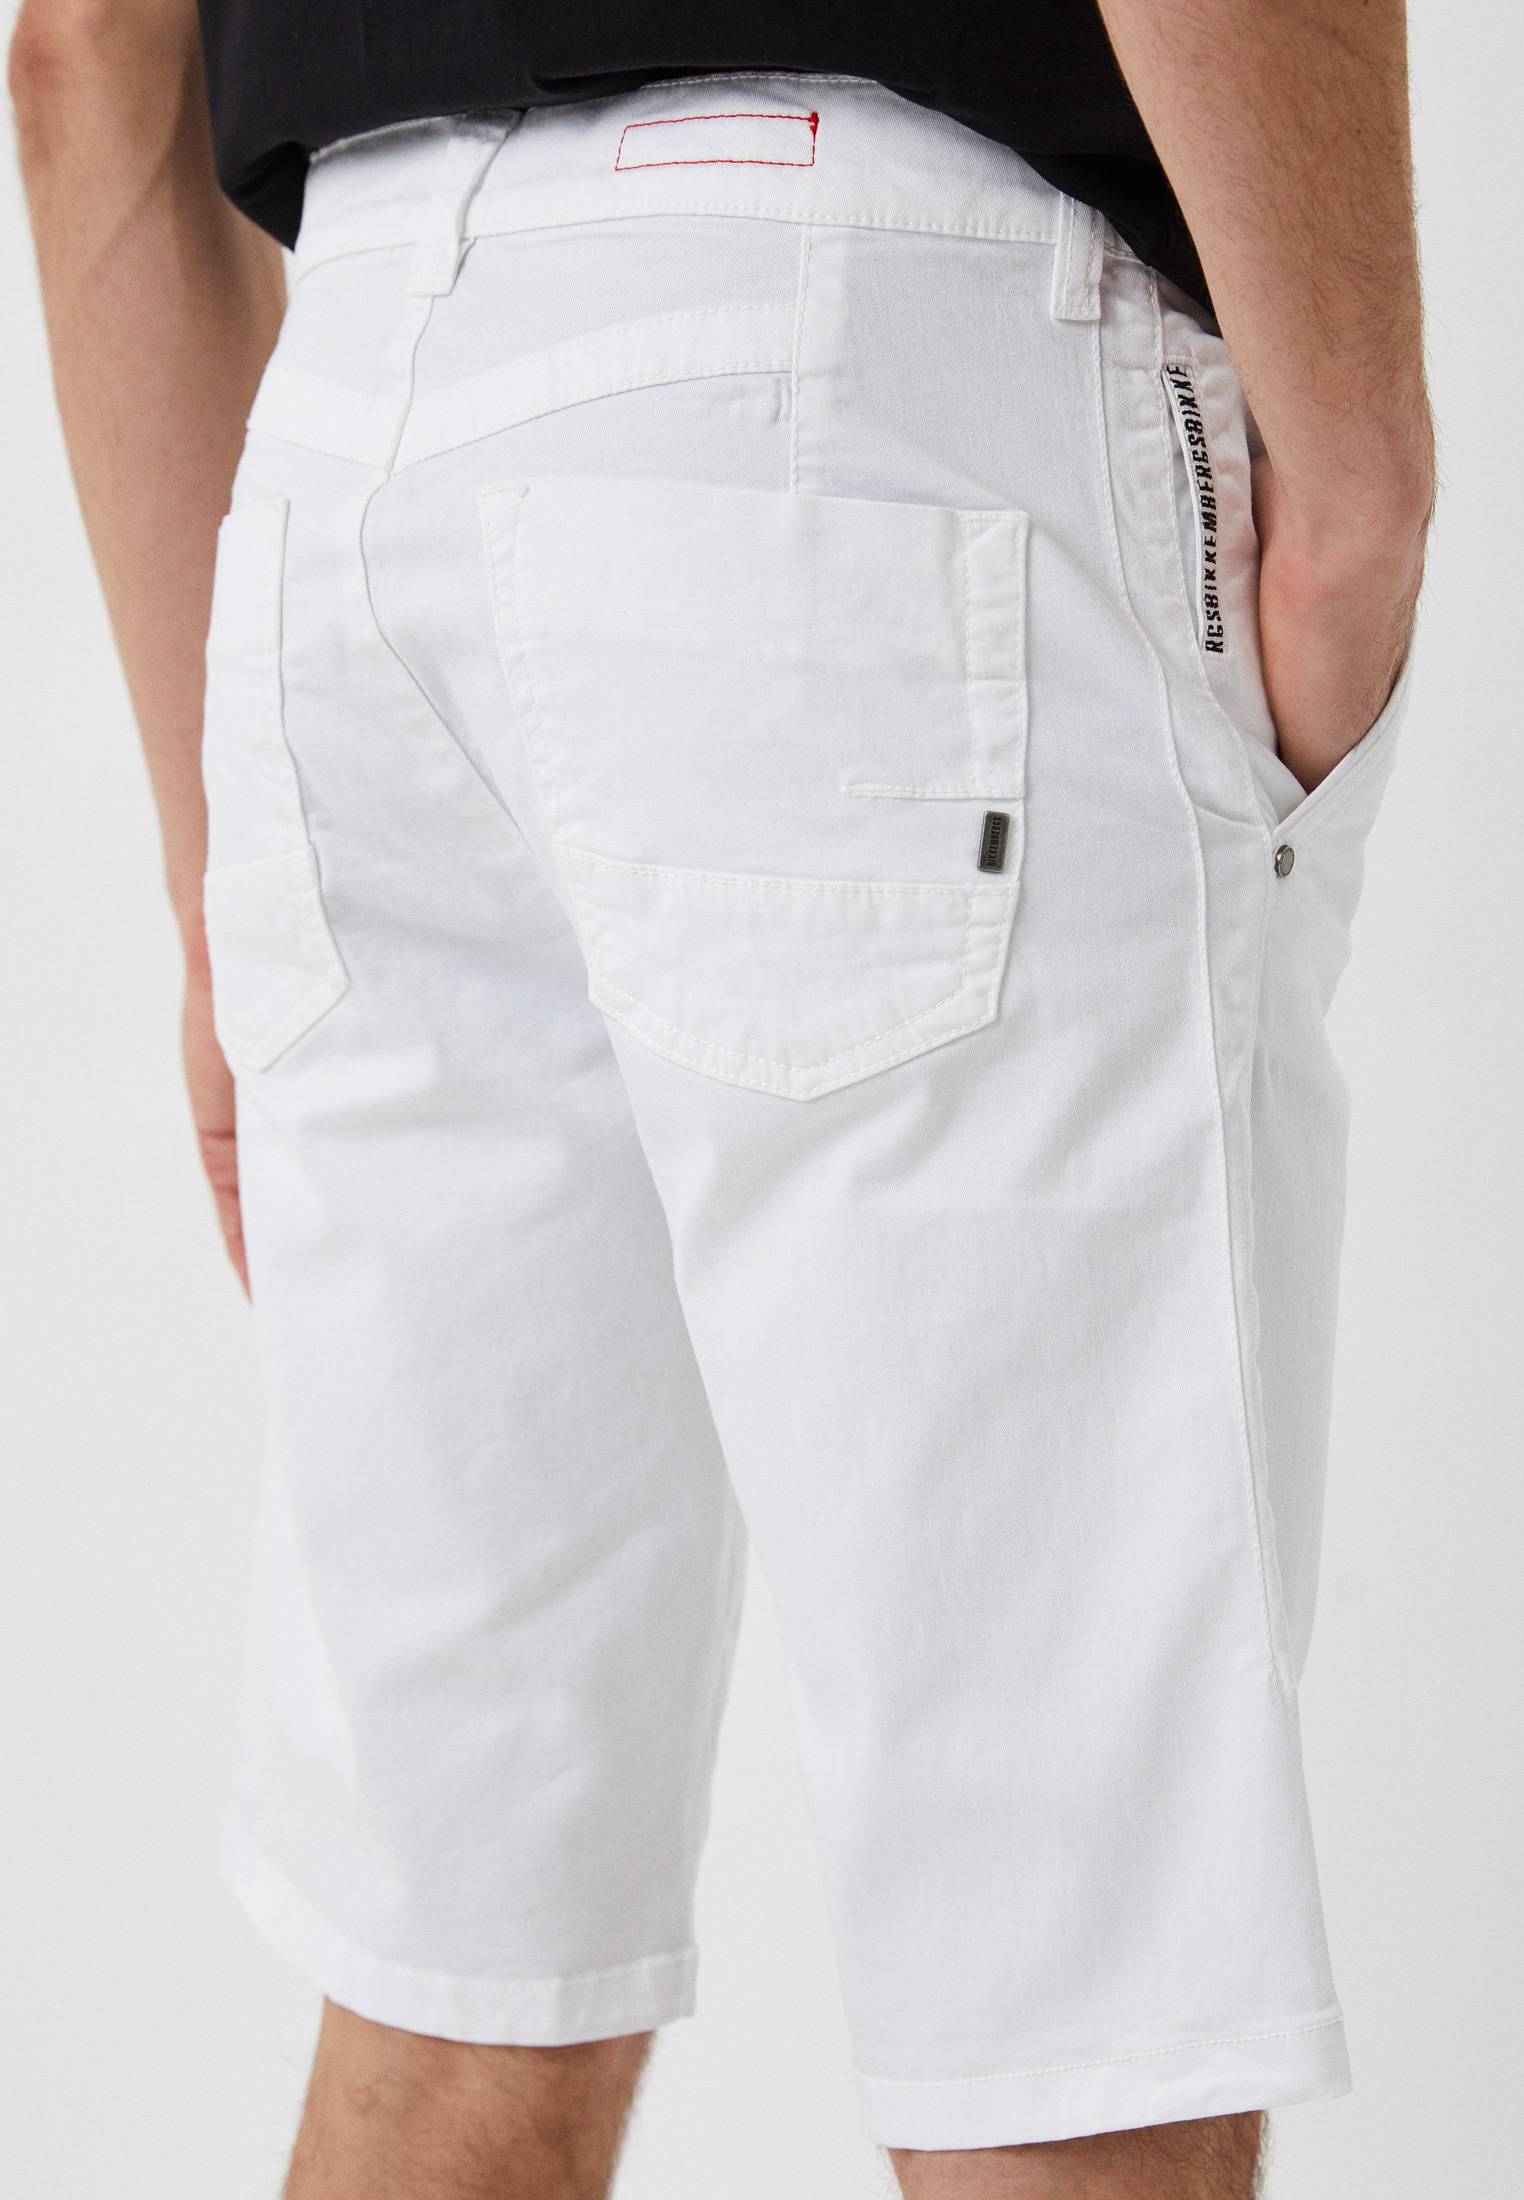 Мужские джинсовые шорты Bikkembergs (Биккембергс) C O 201 70 S 3075: изображение 4